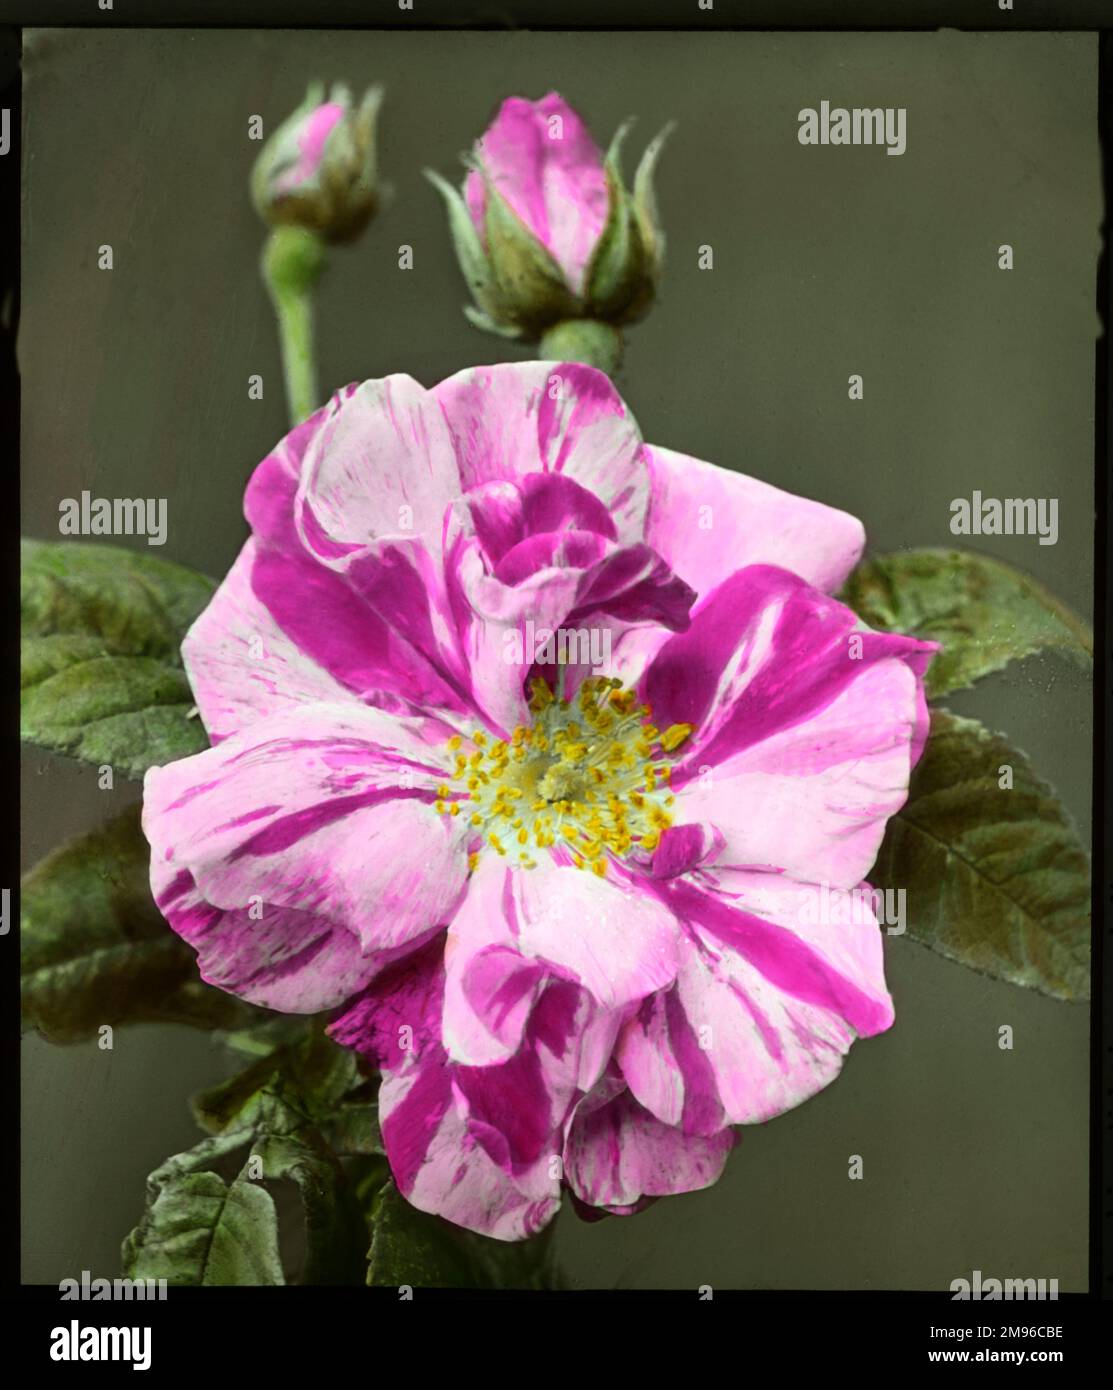 Rosa gallica 'Versicolor' (Rosa Mundi), una rosa popolare della famiglia Rosaceae. Visto qui in primo piano, con un fiore aperto e due gemme. I petali sono variegati, con segni rosa e viola. Foto Stock